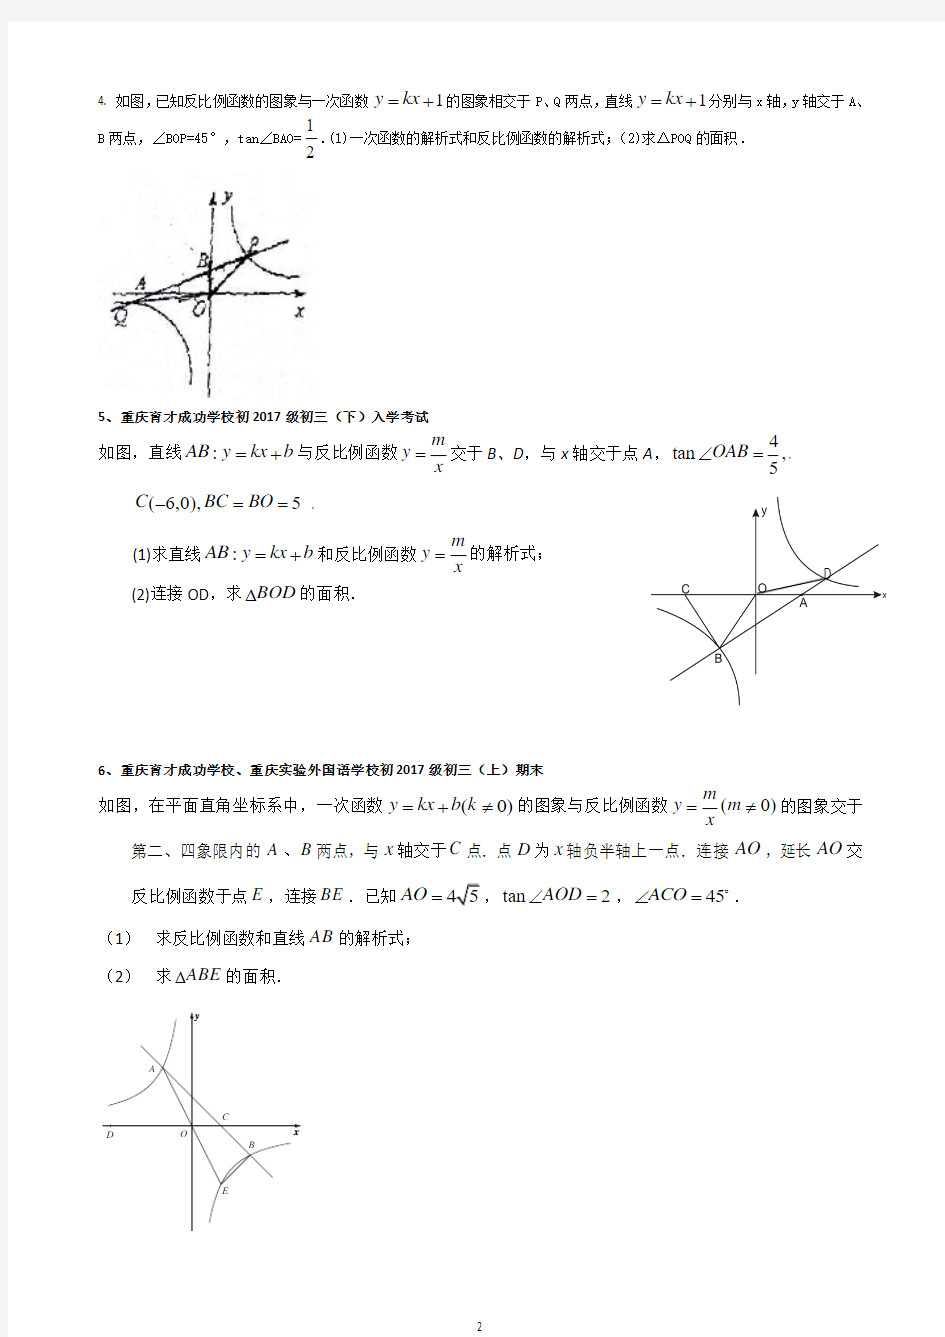 2017重庆中考数学第22题专题训练一